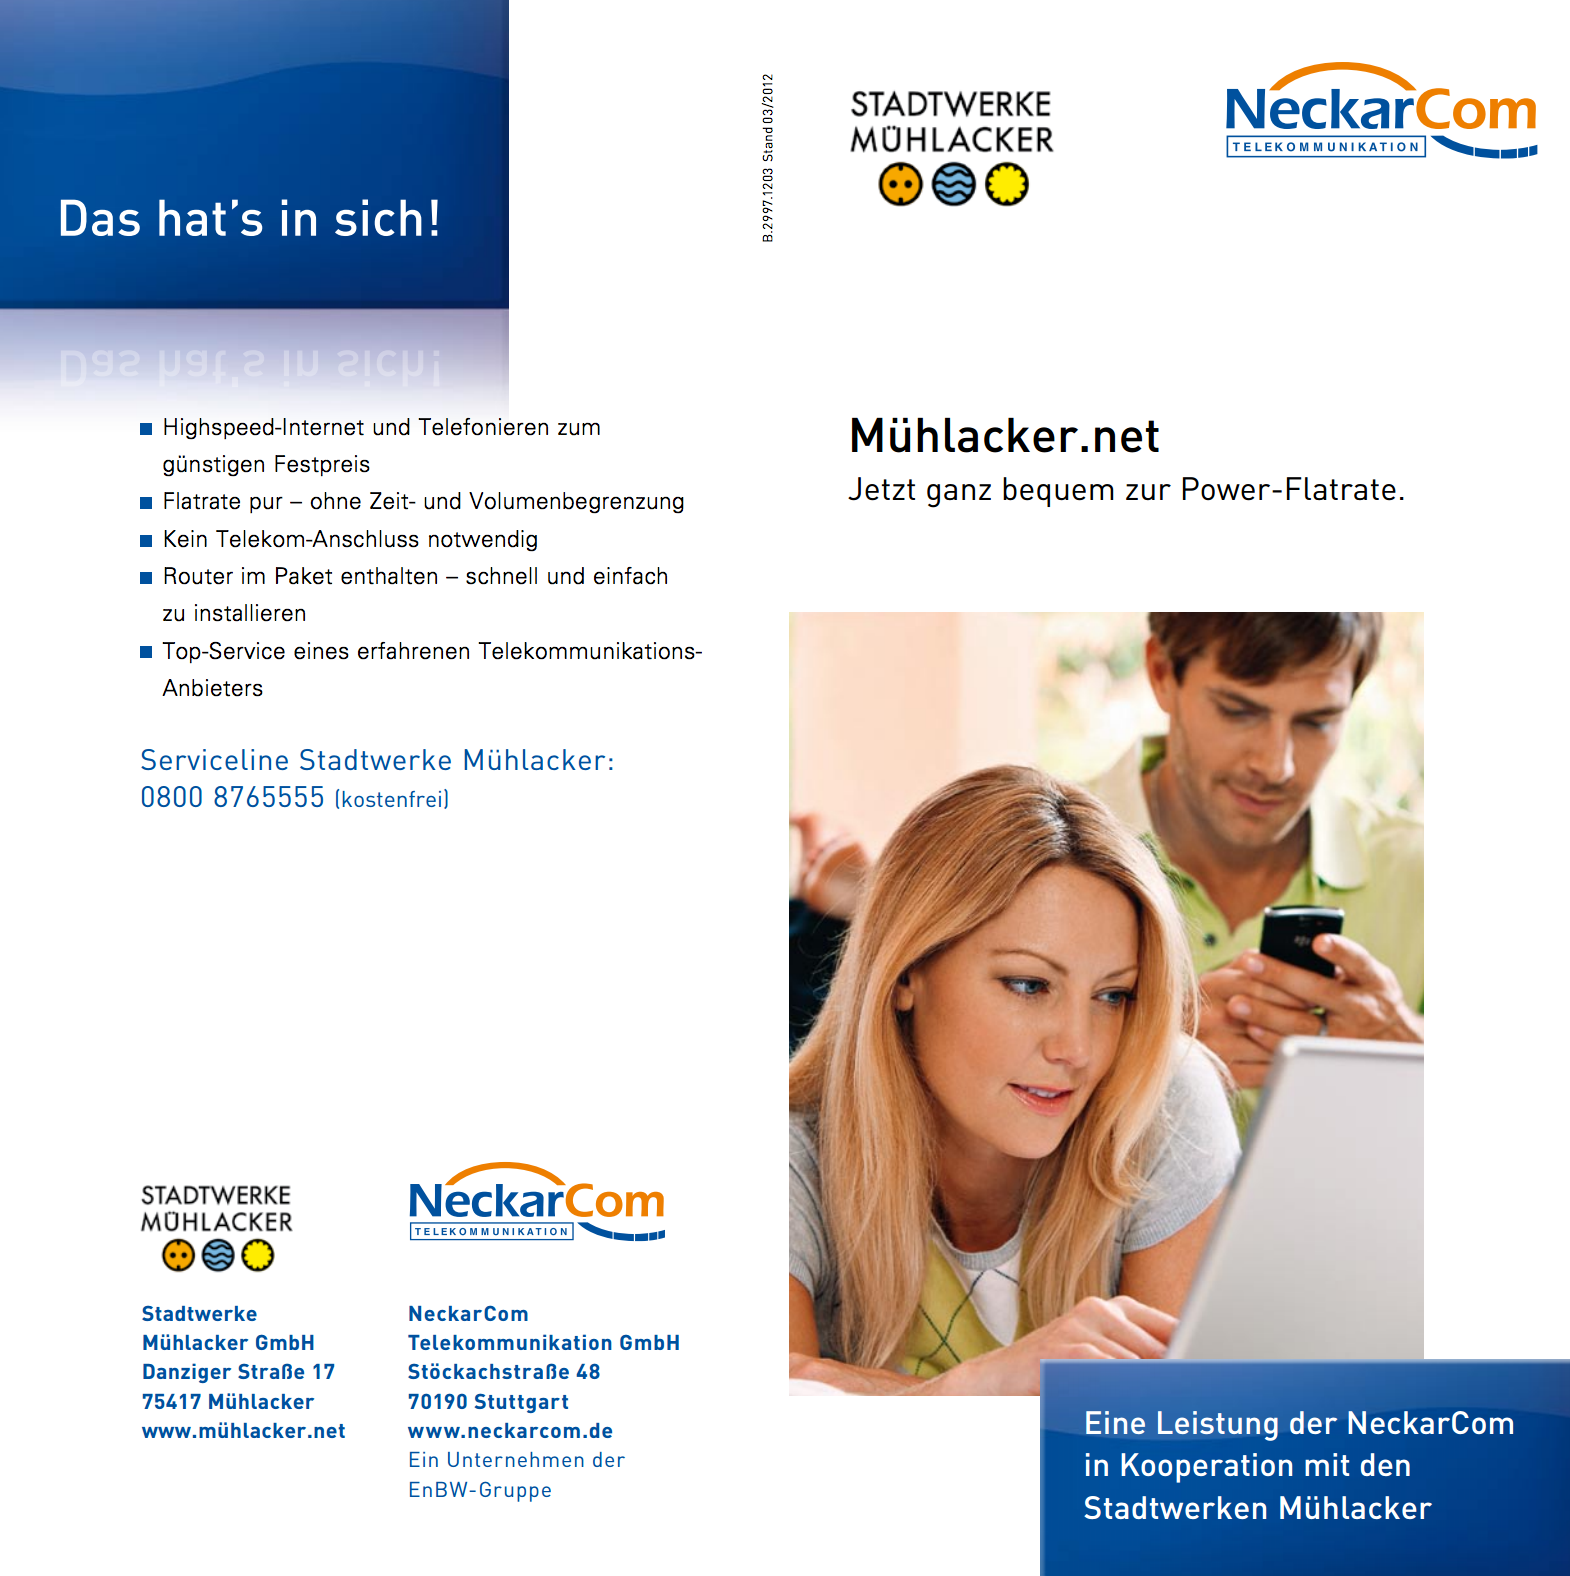 Mühlacker.net, eine Kooperation zwischen den Stadtwerken und NetCom BW für schnelles Internet in Mühlacker